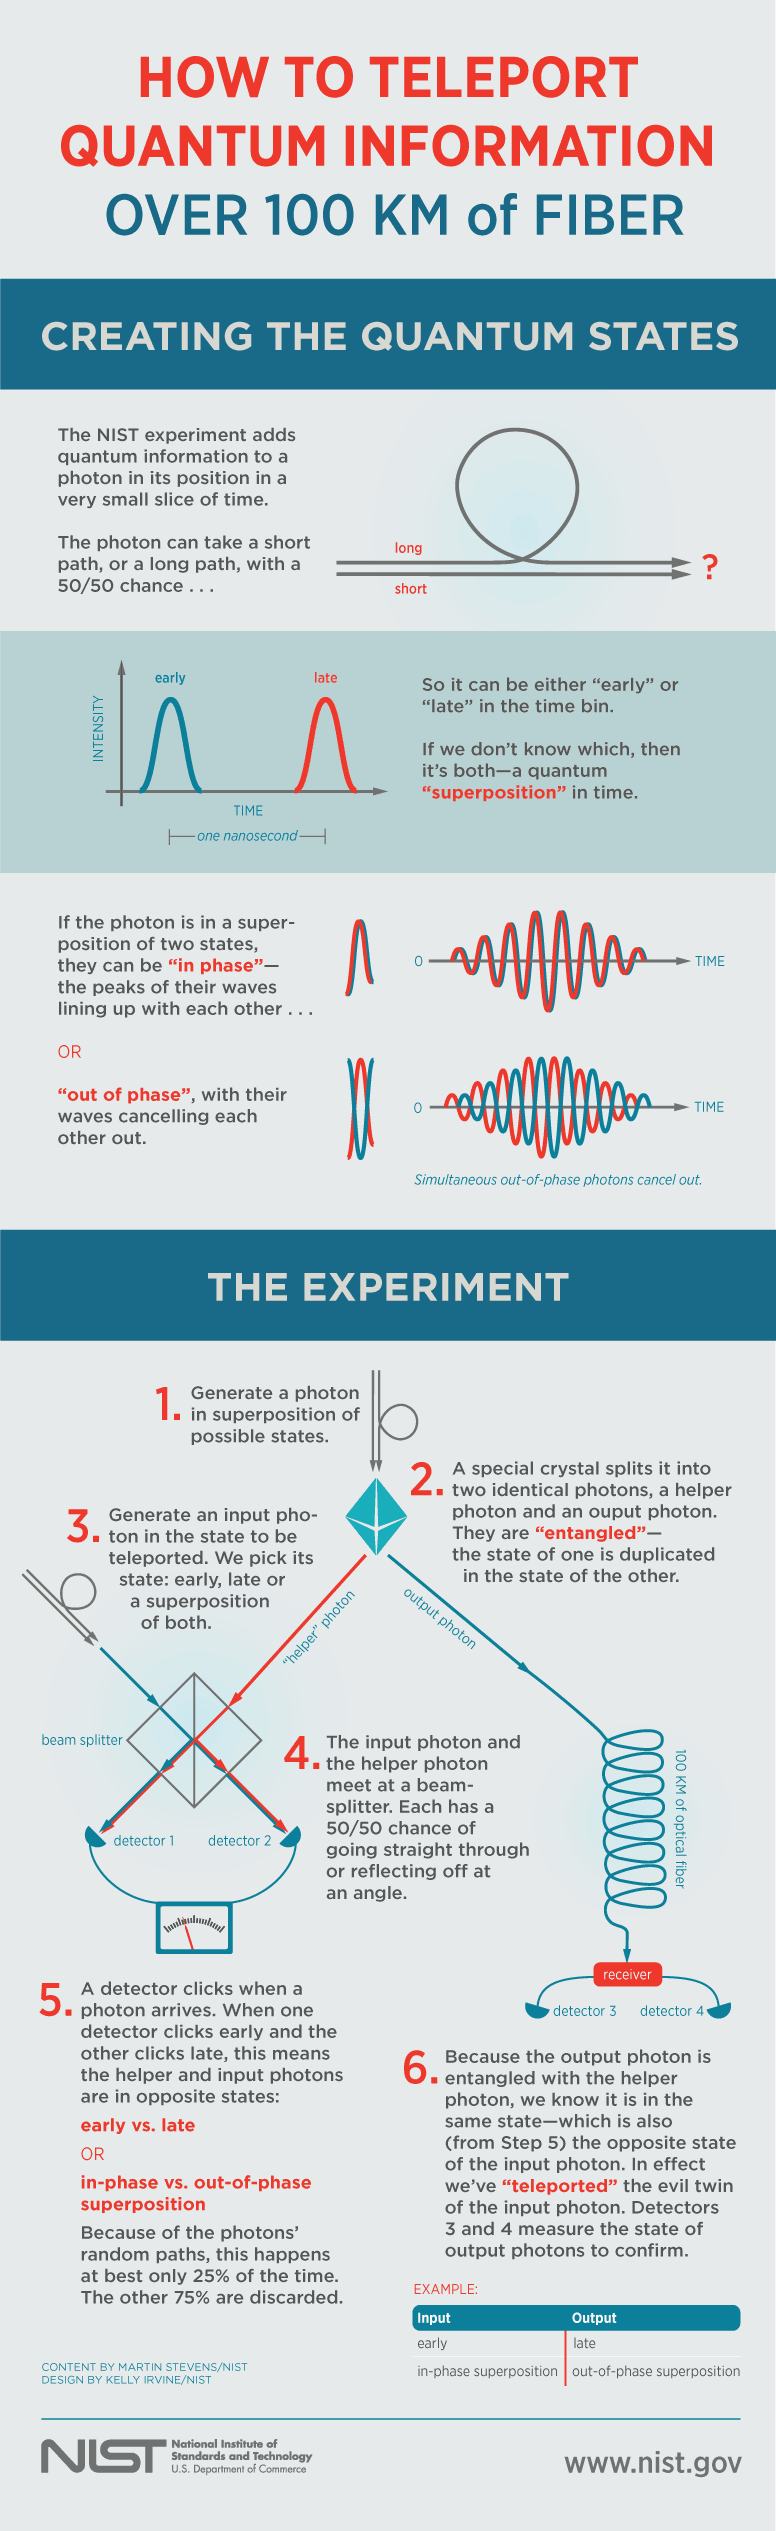 nist quantum teleportation infographic fullsize